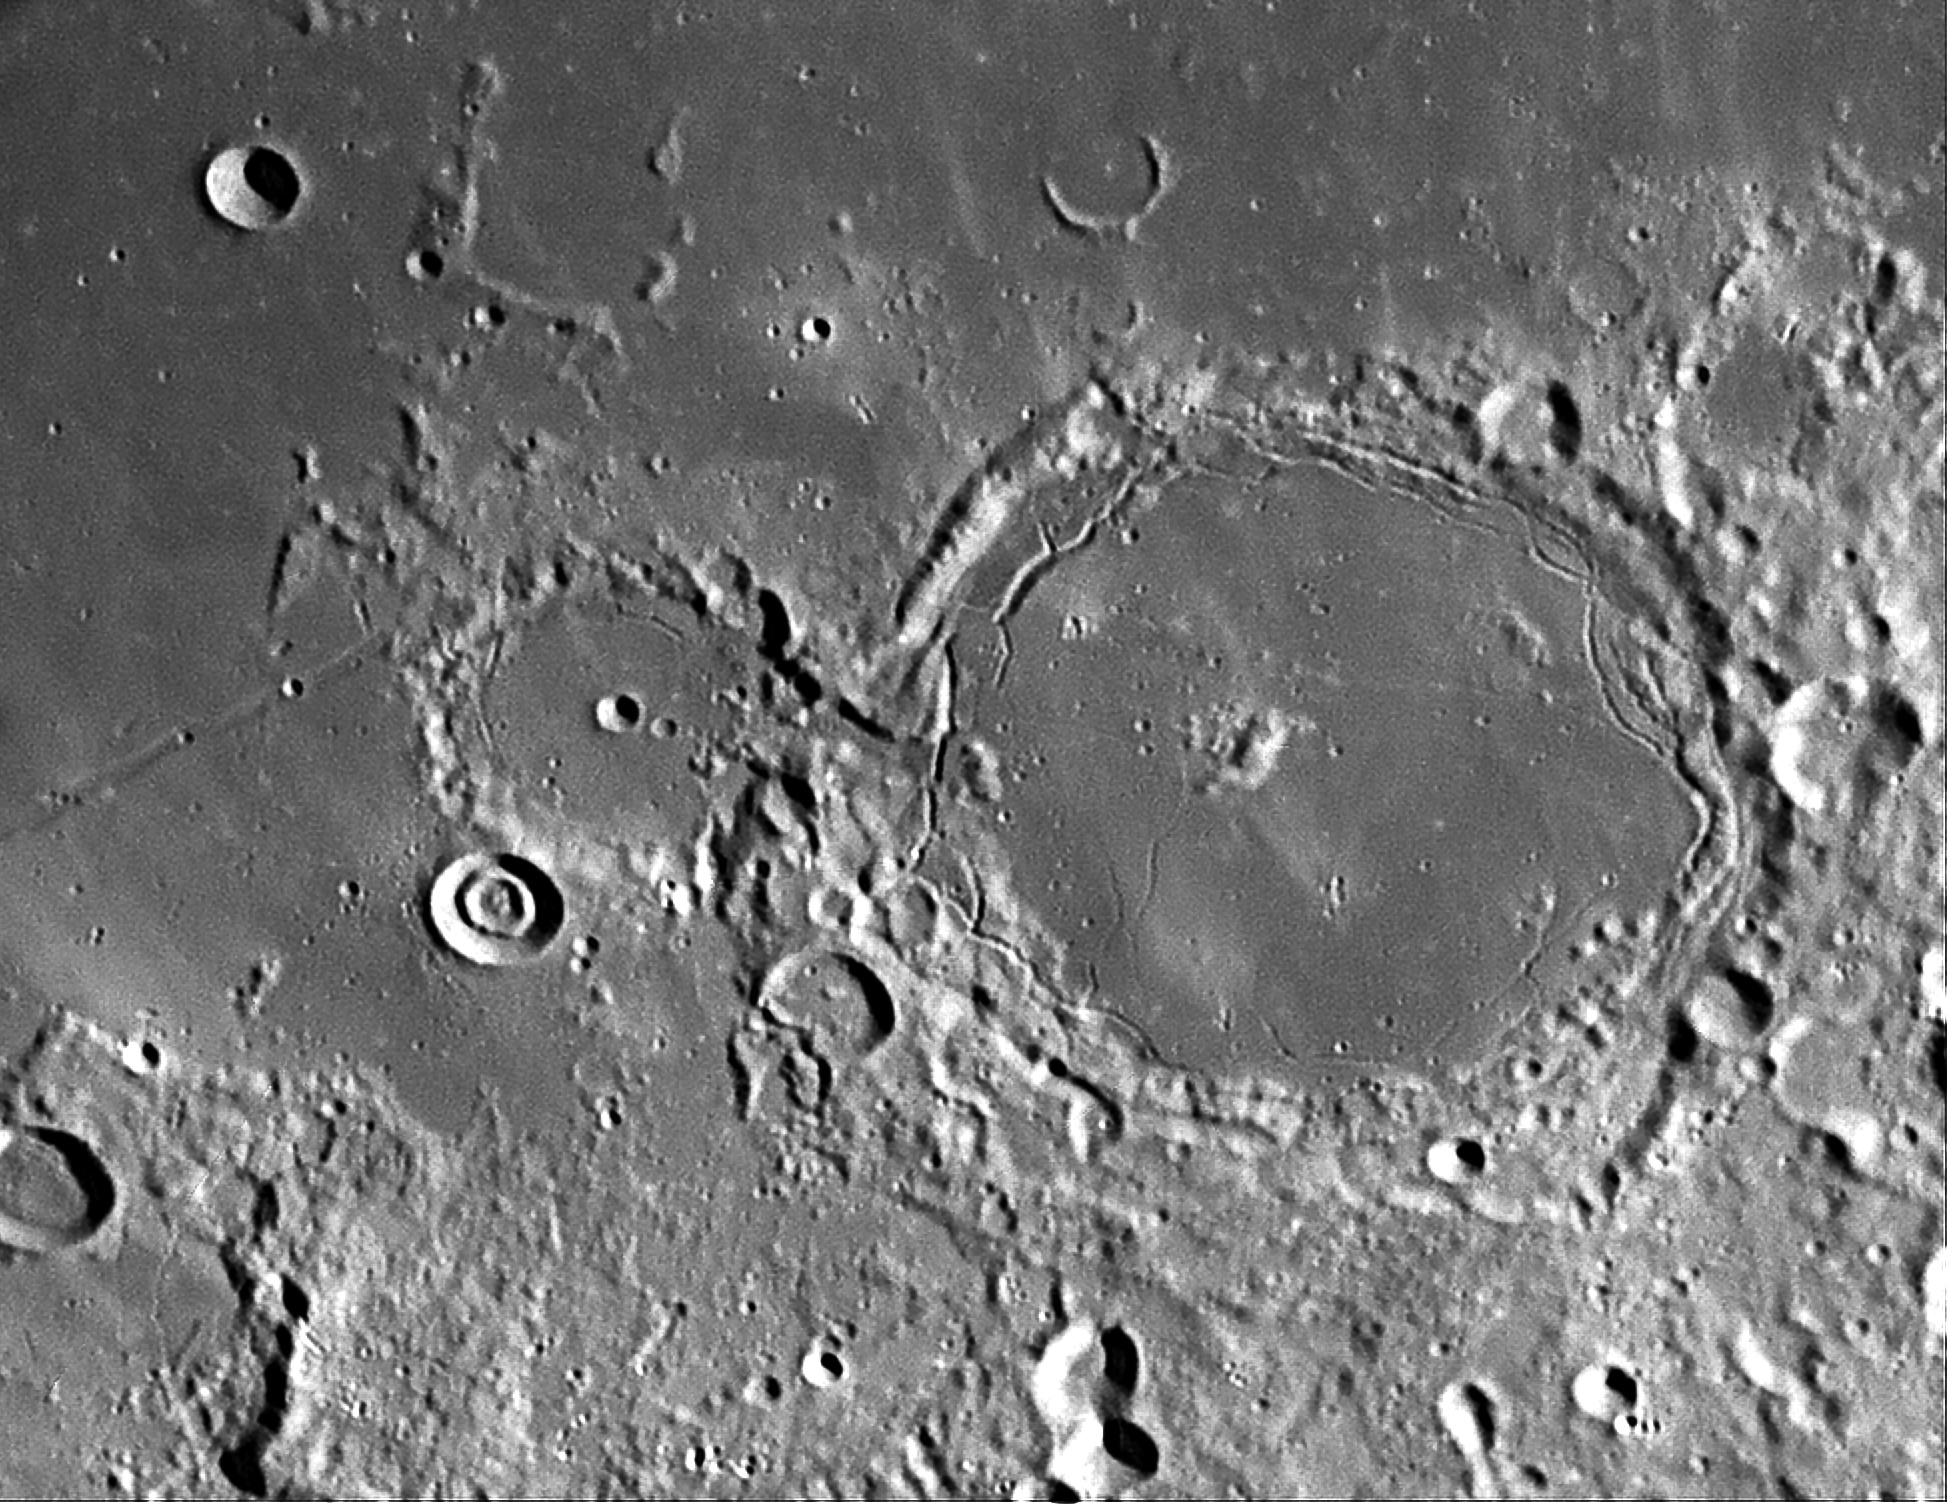 Что является образованием кратеров на луне